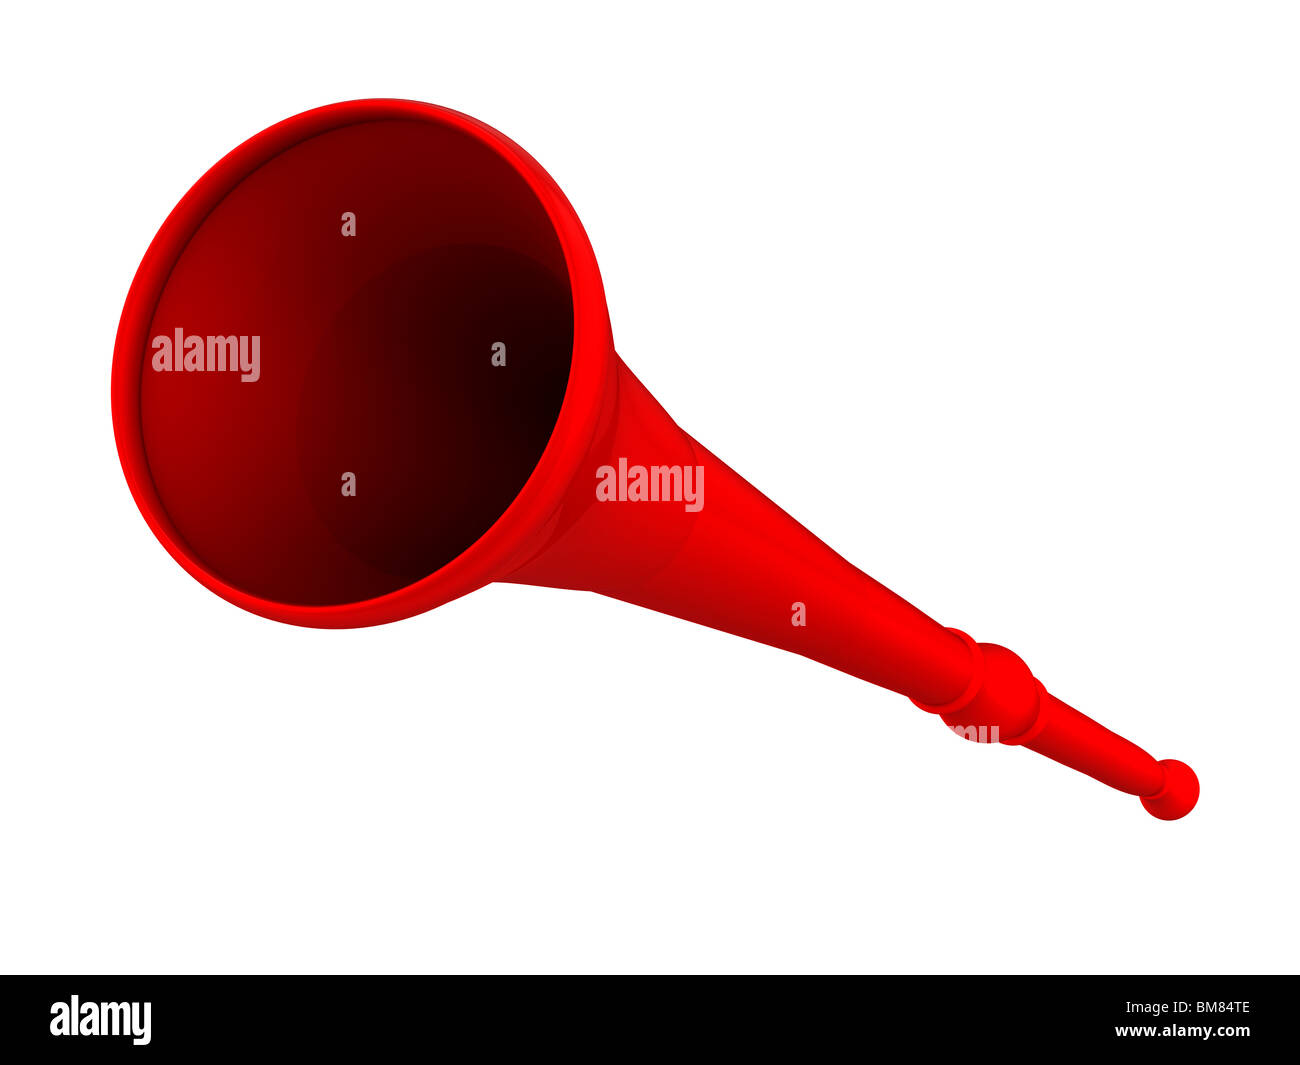 Vuvuzela horn in red on white background Stock Photo